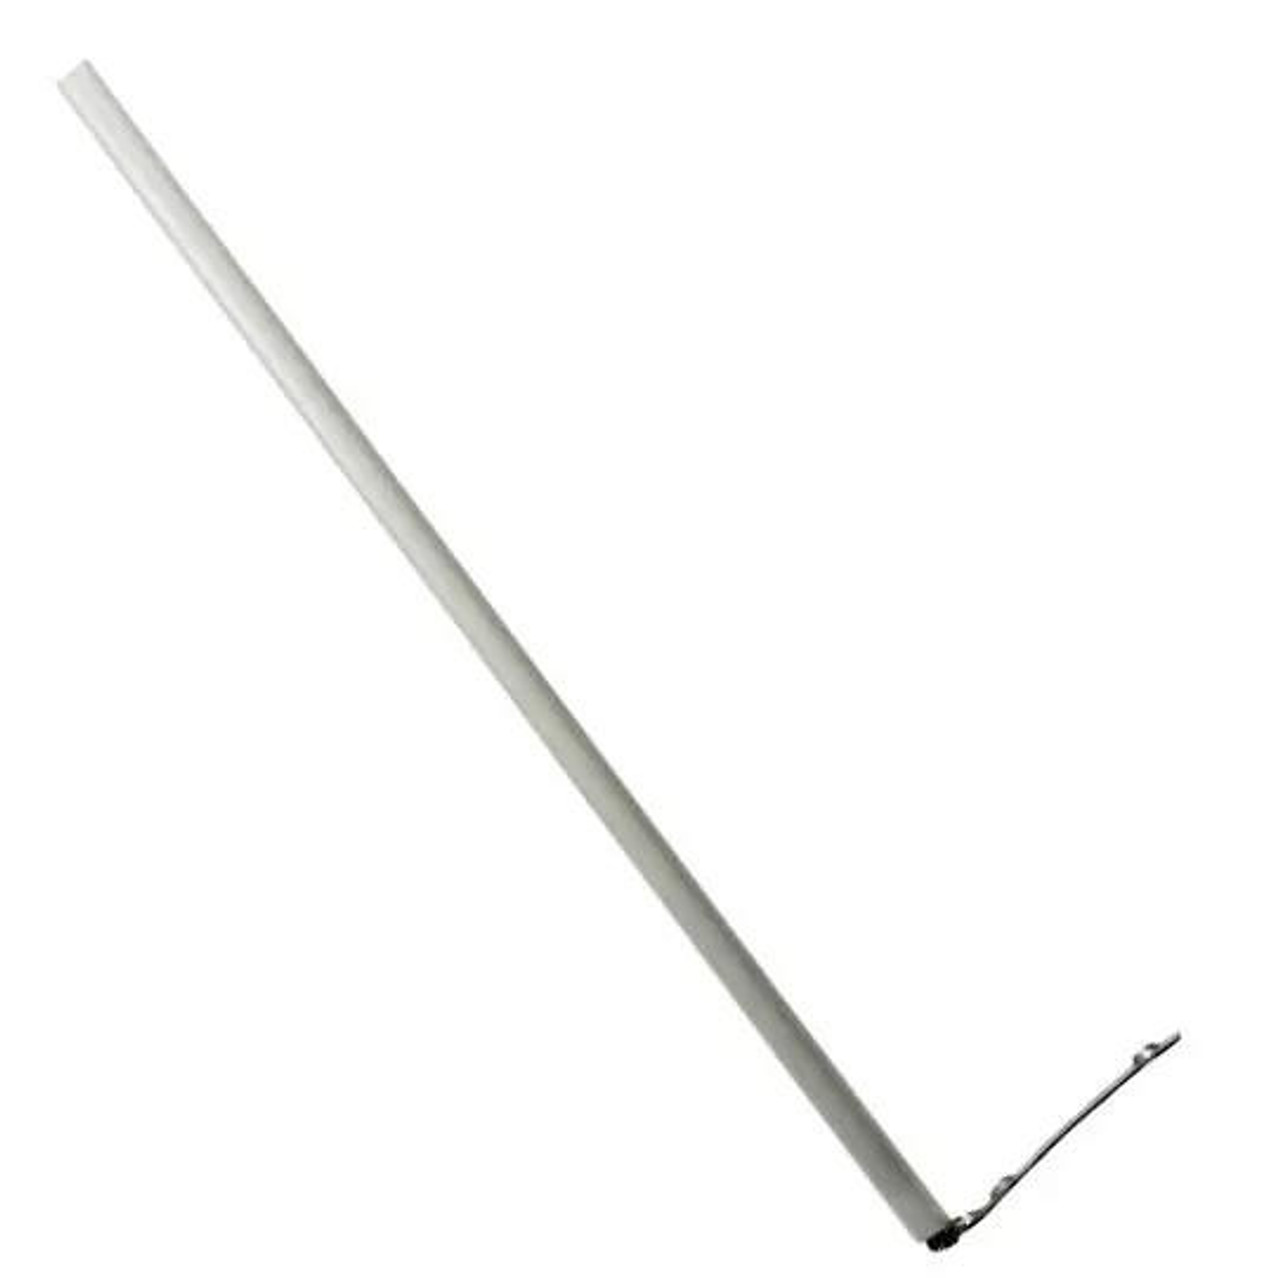 Gainsborough Unique Sash Balance Type 'D' 16mm Diameter - White